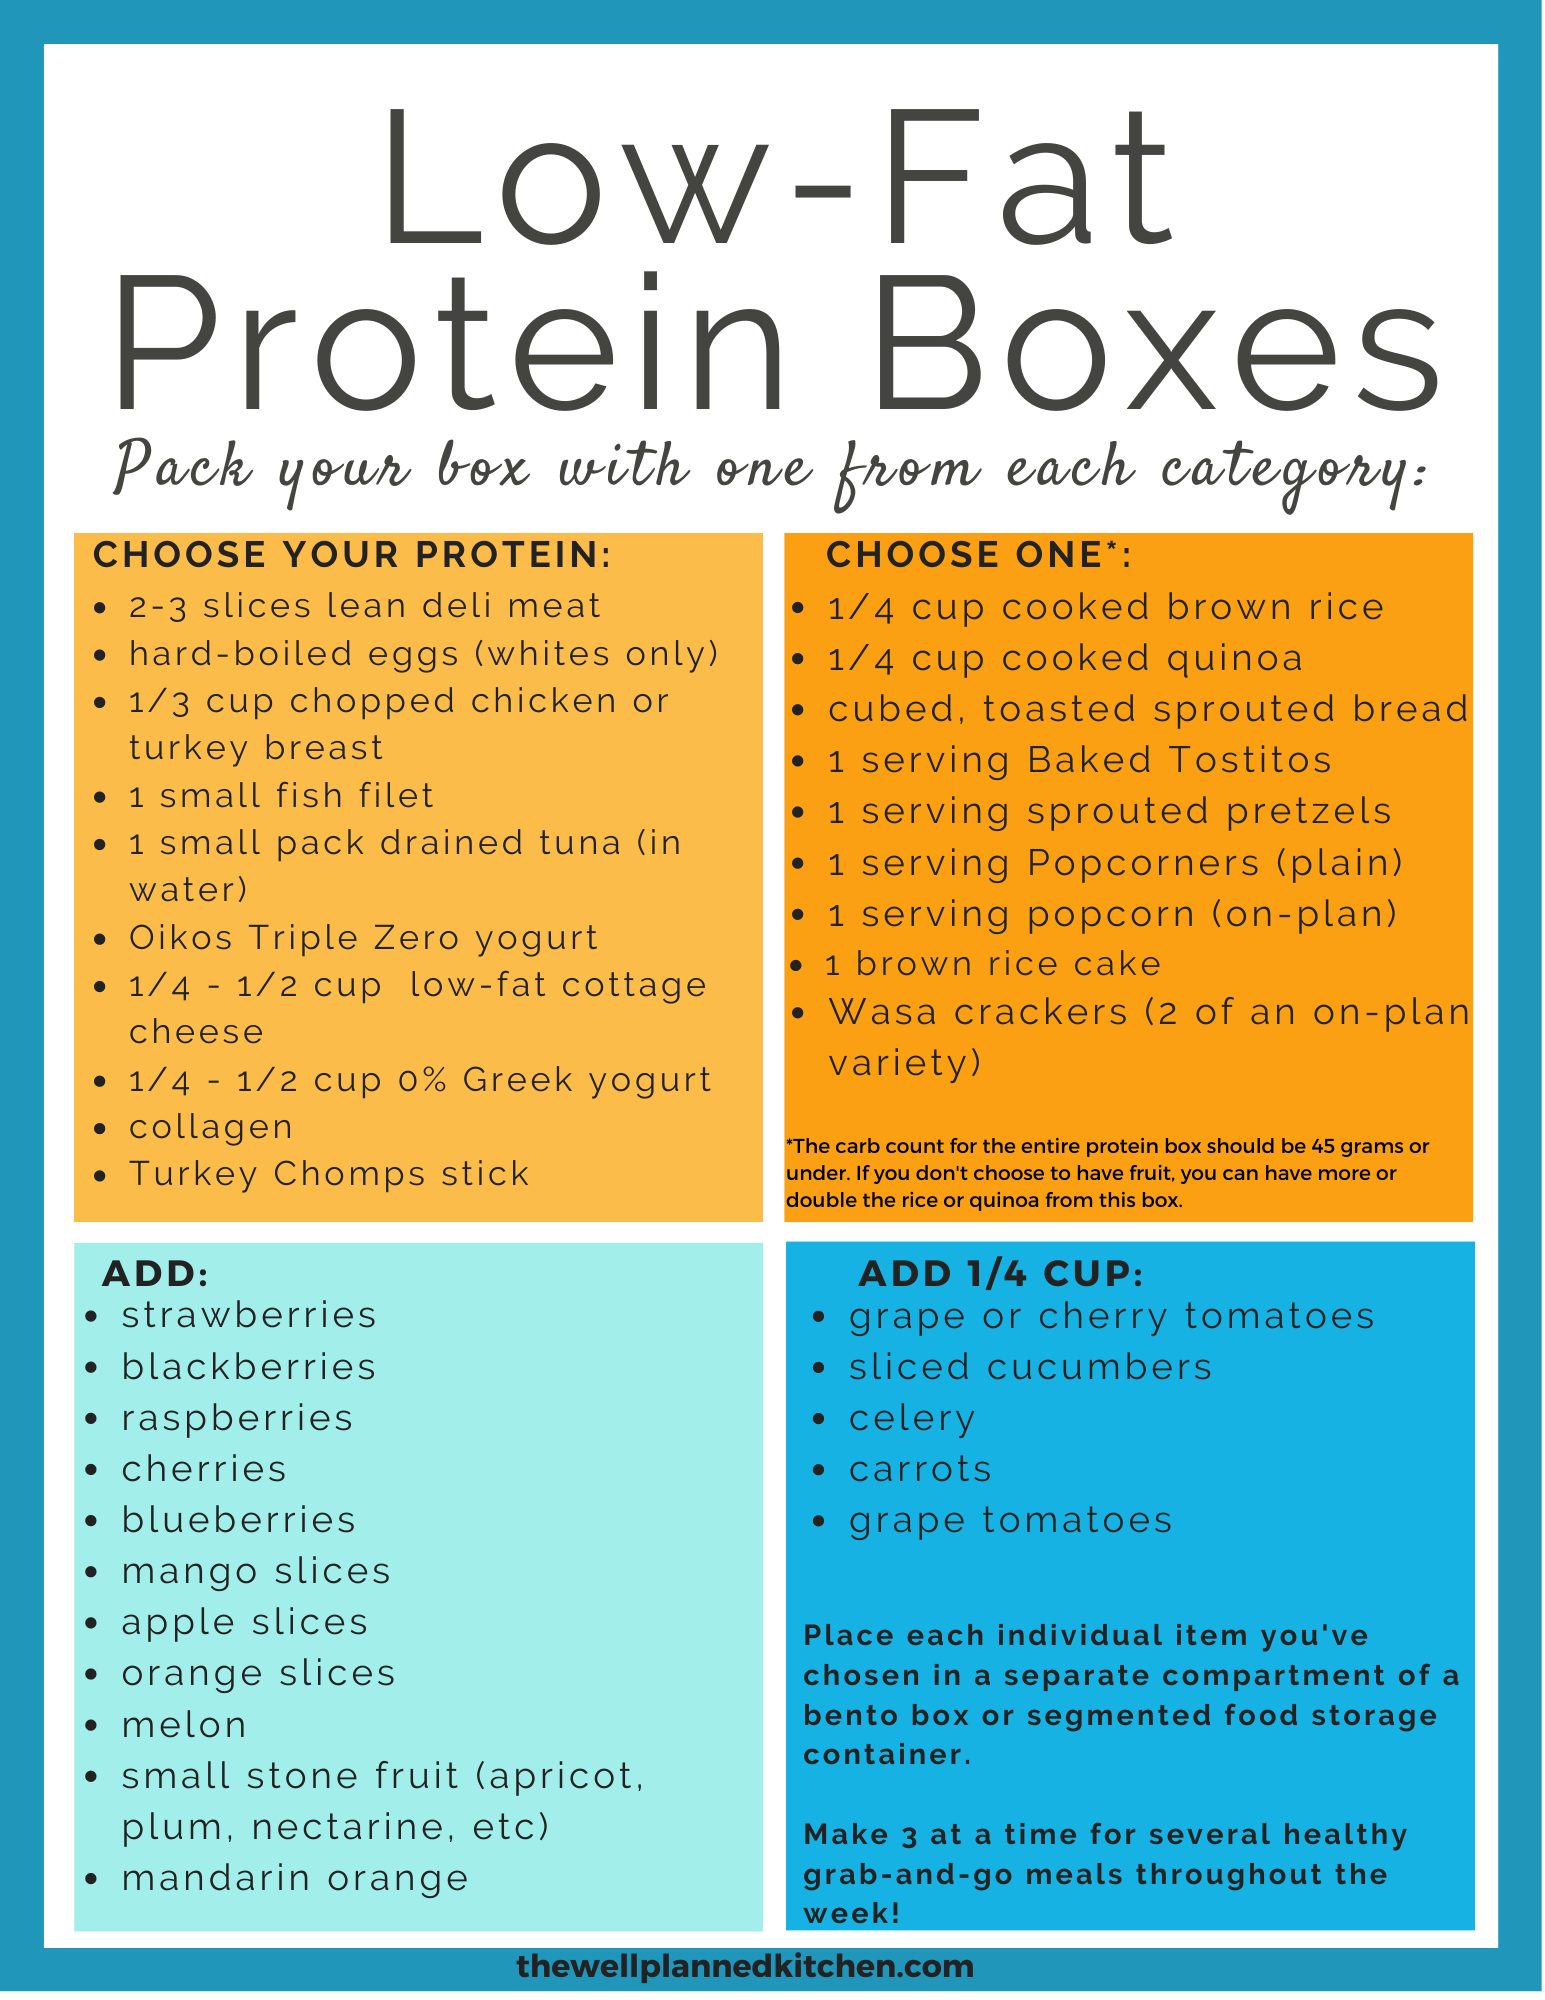 Trim Healthy Mama Lunch idea - DIY Bento Boxes!